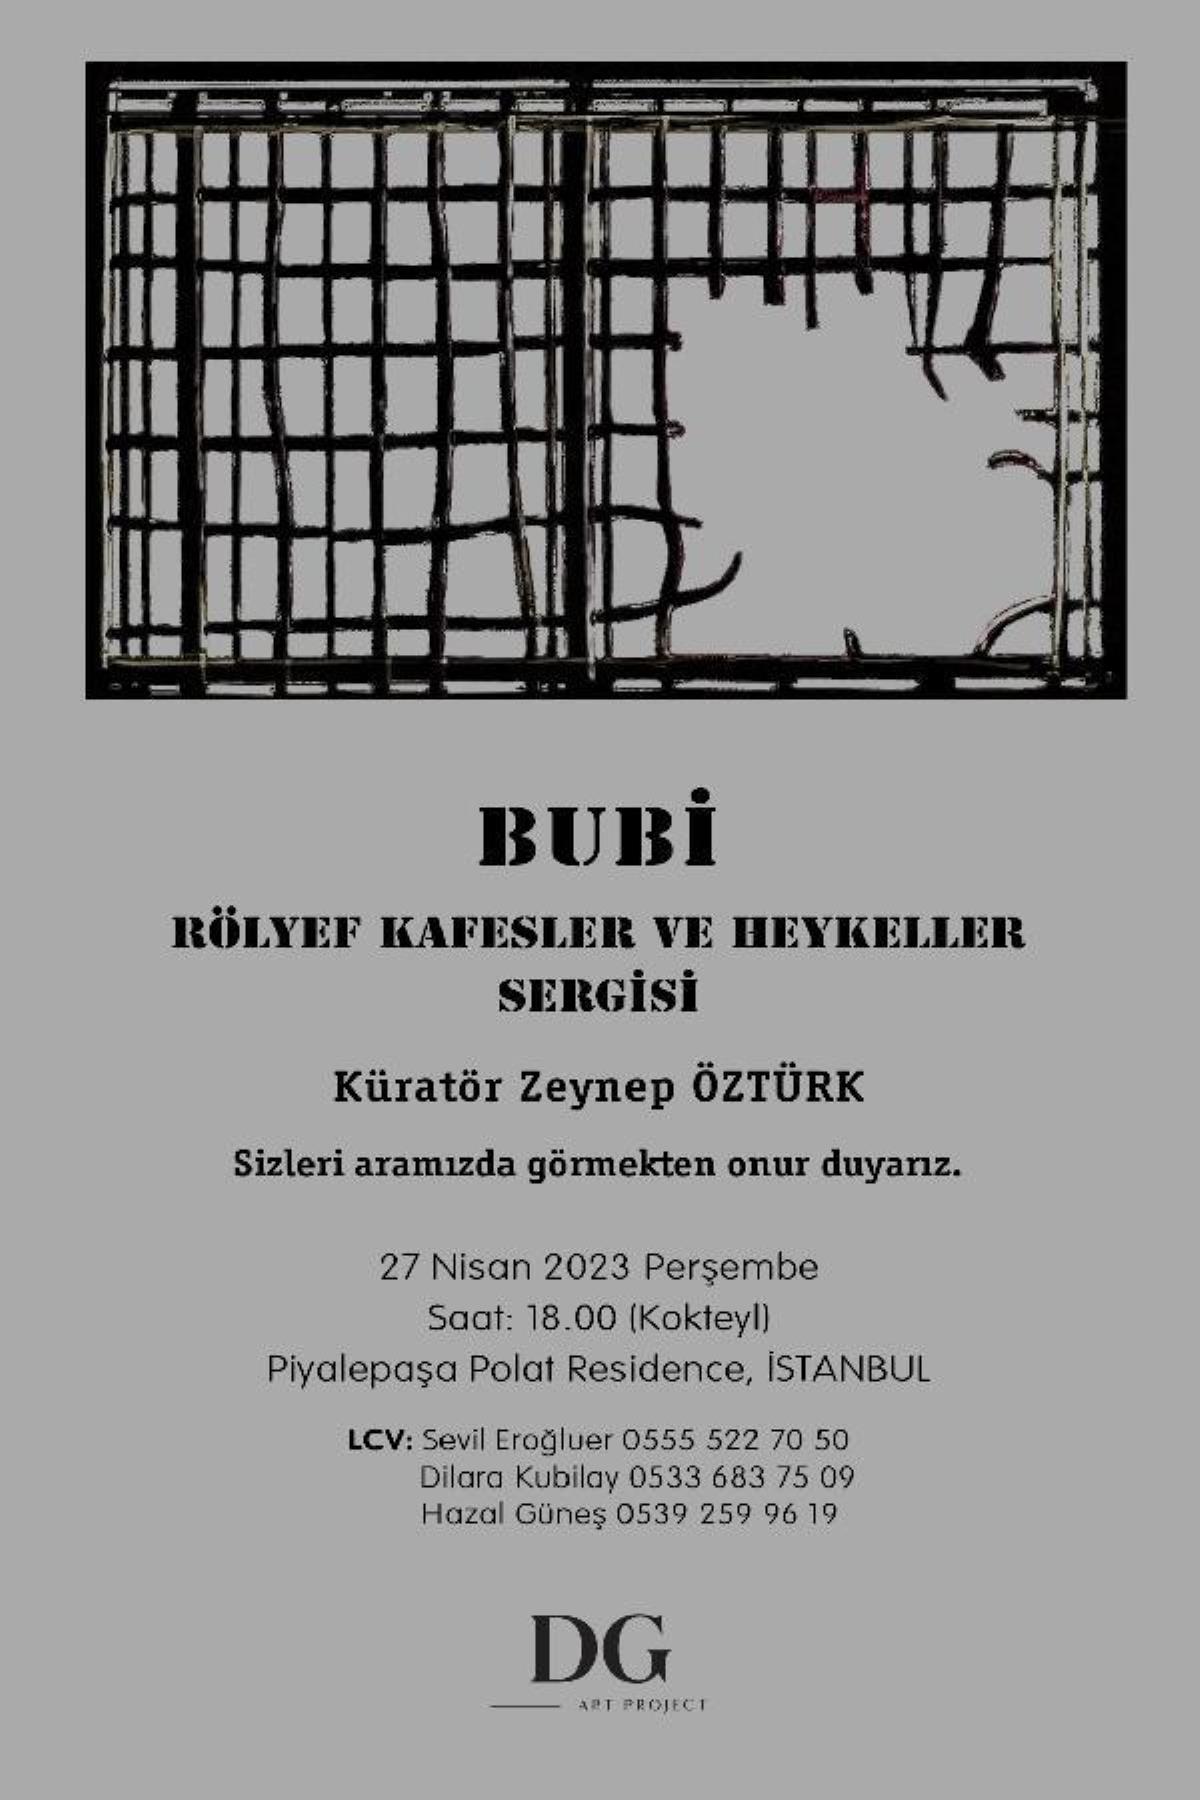 BUBİ'nin 'Rölyef Kafesler ve Heykeller Sergisi' açılıyor